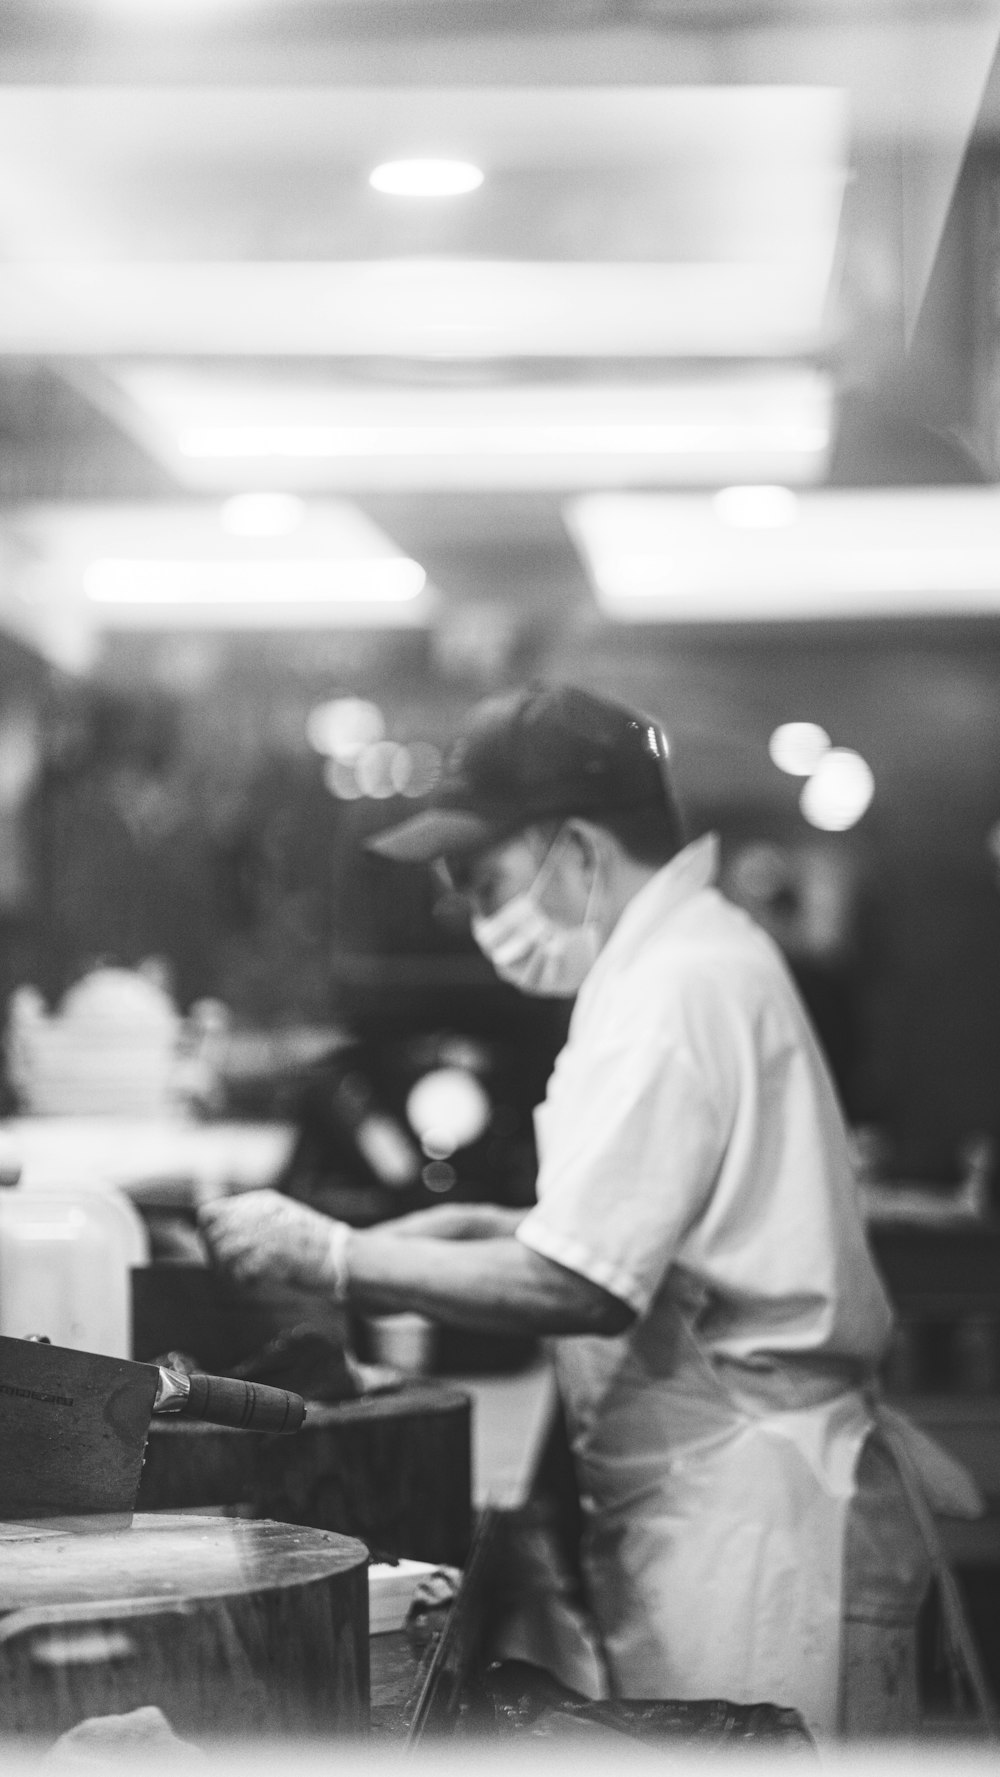 Una foto en blanco y negro de un hombre trabajando en un restaurante